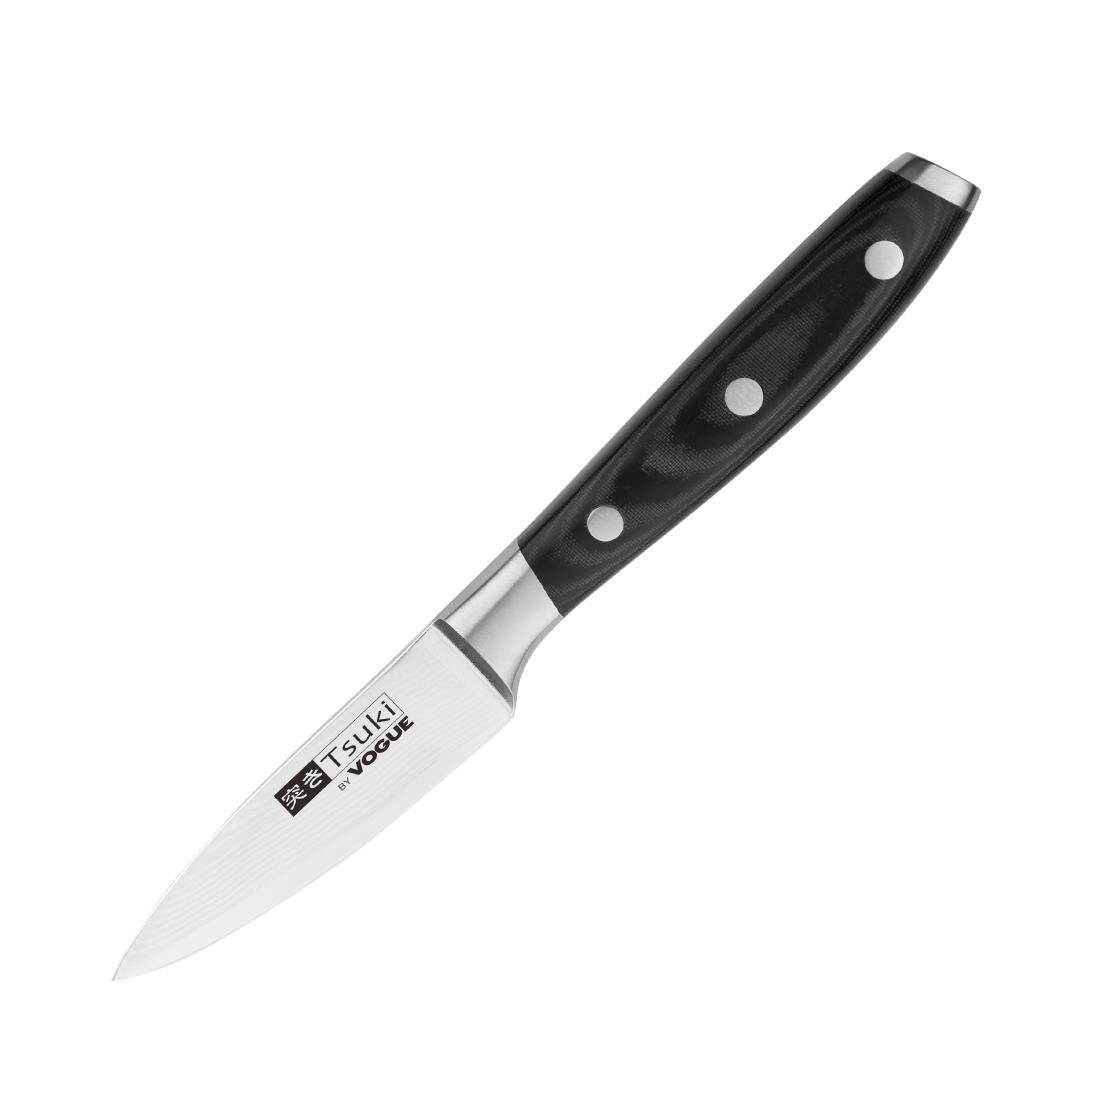 Tsuki Series 7 Paring Knife 9cm